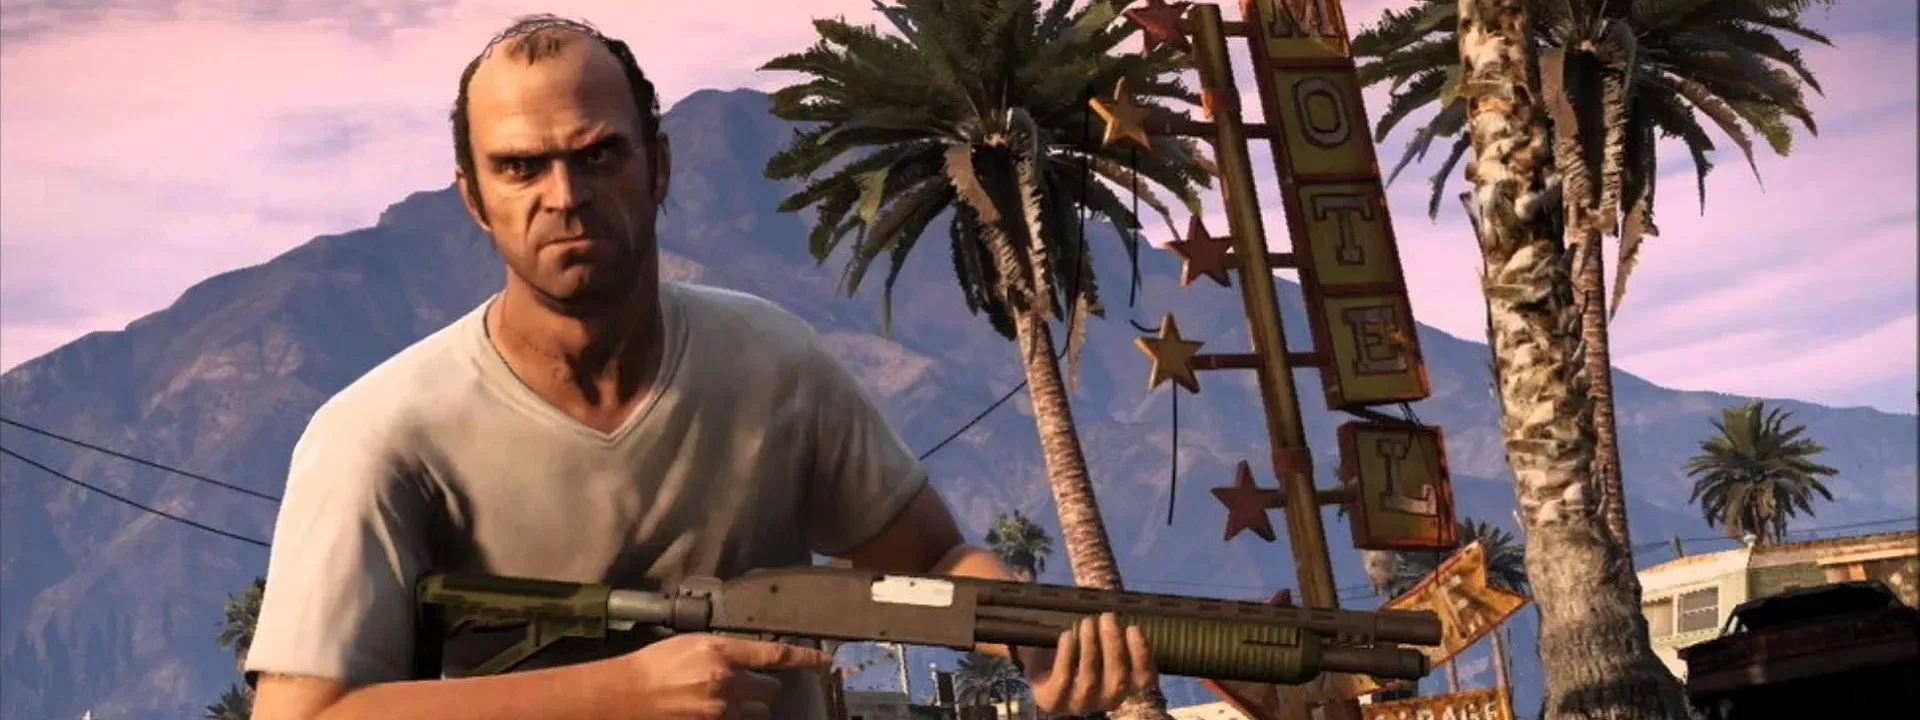 لعبة Grand Theft Auto V باعت 130 مليون نسخة